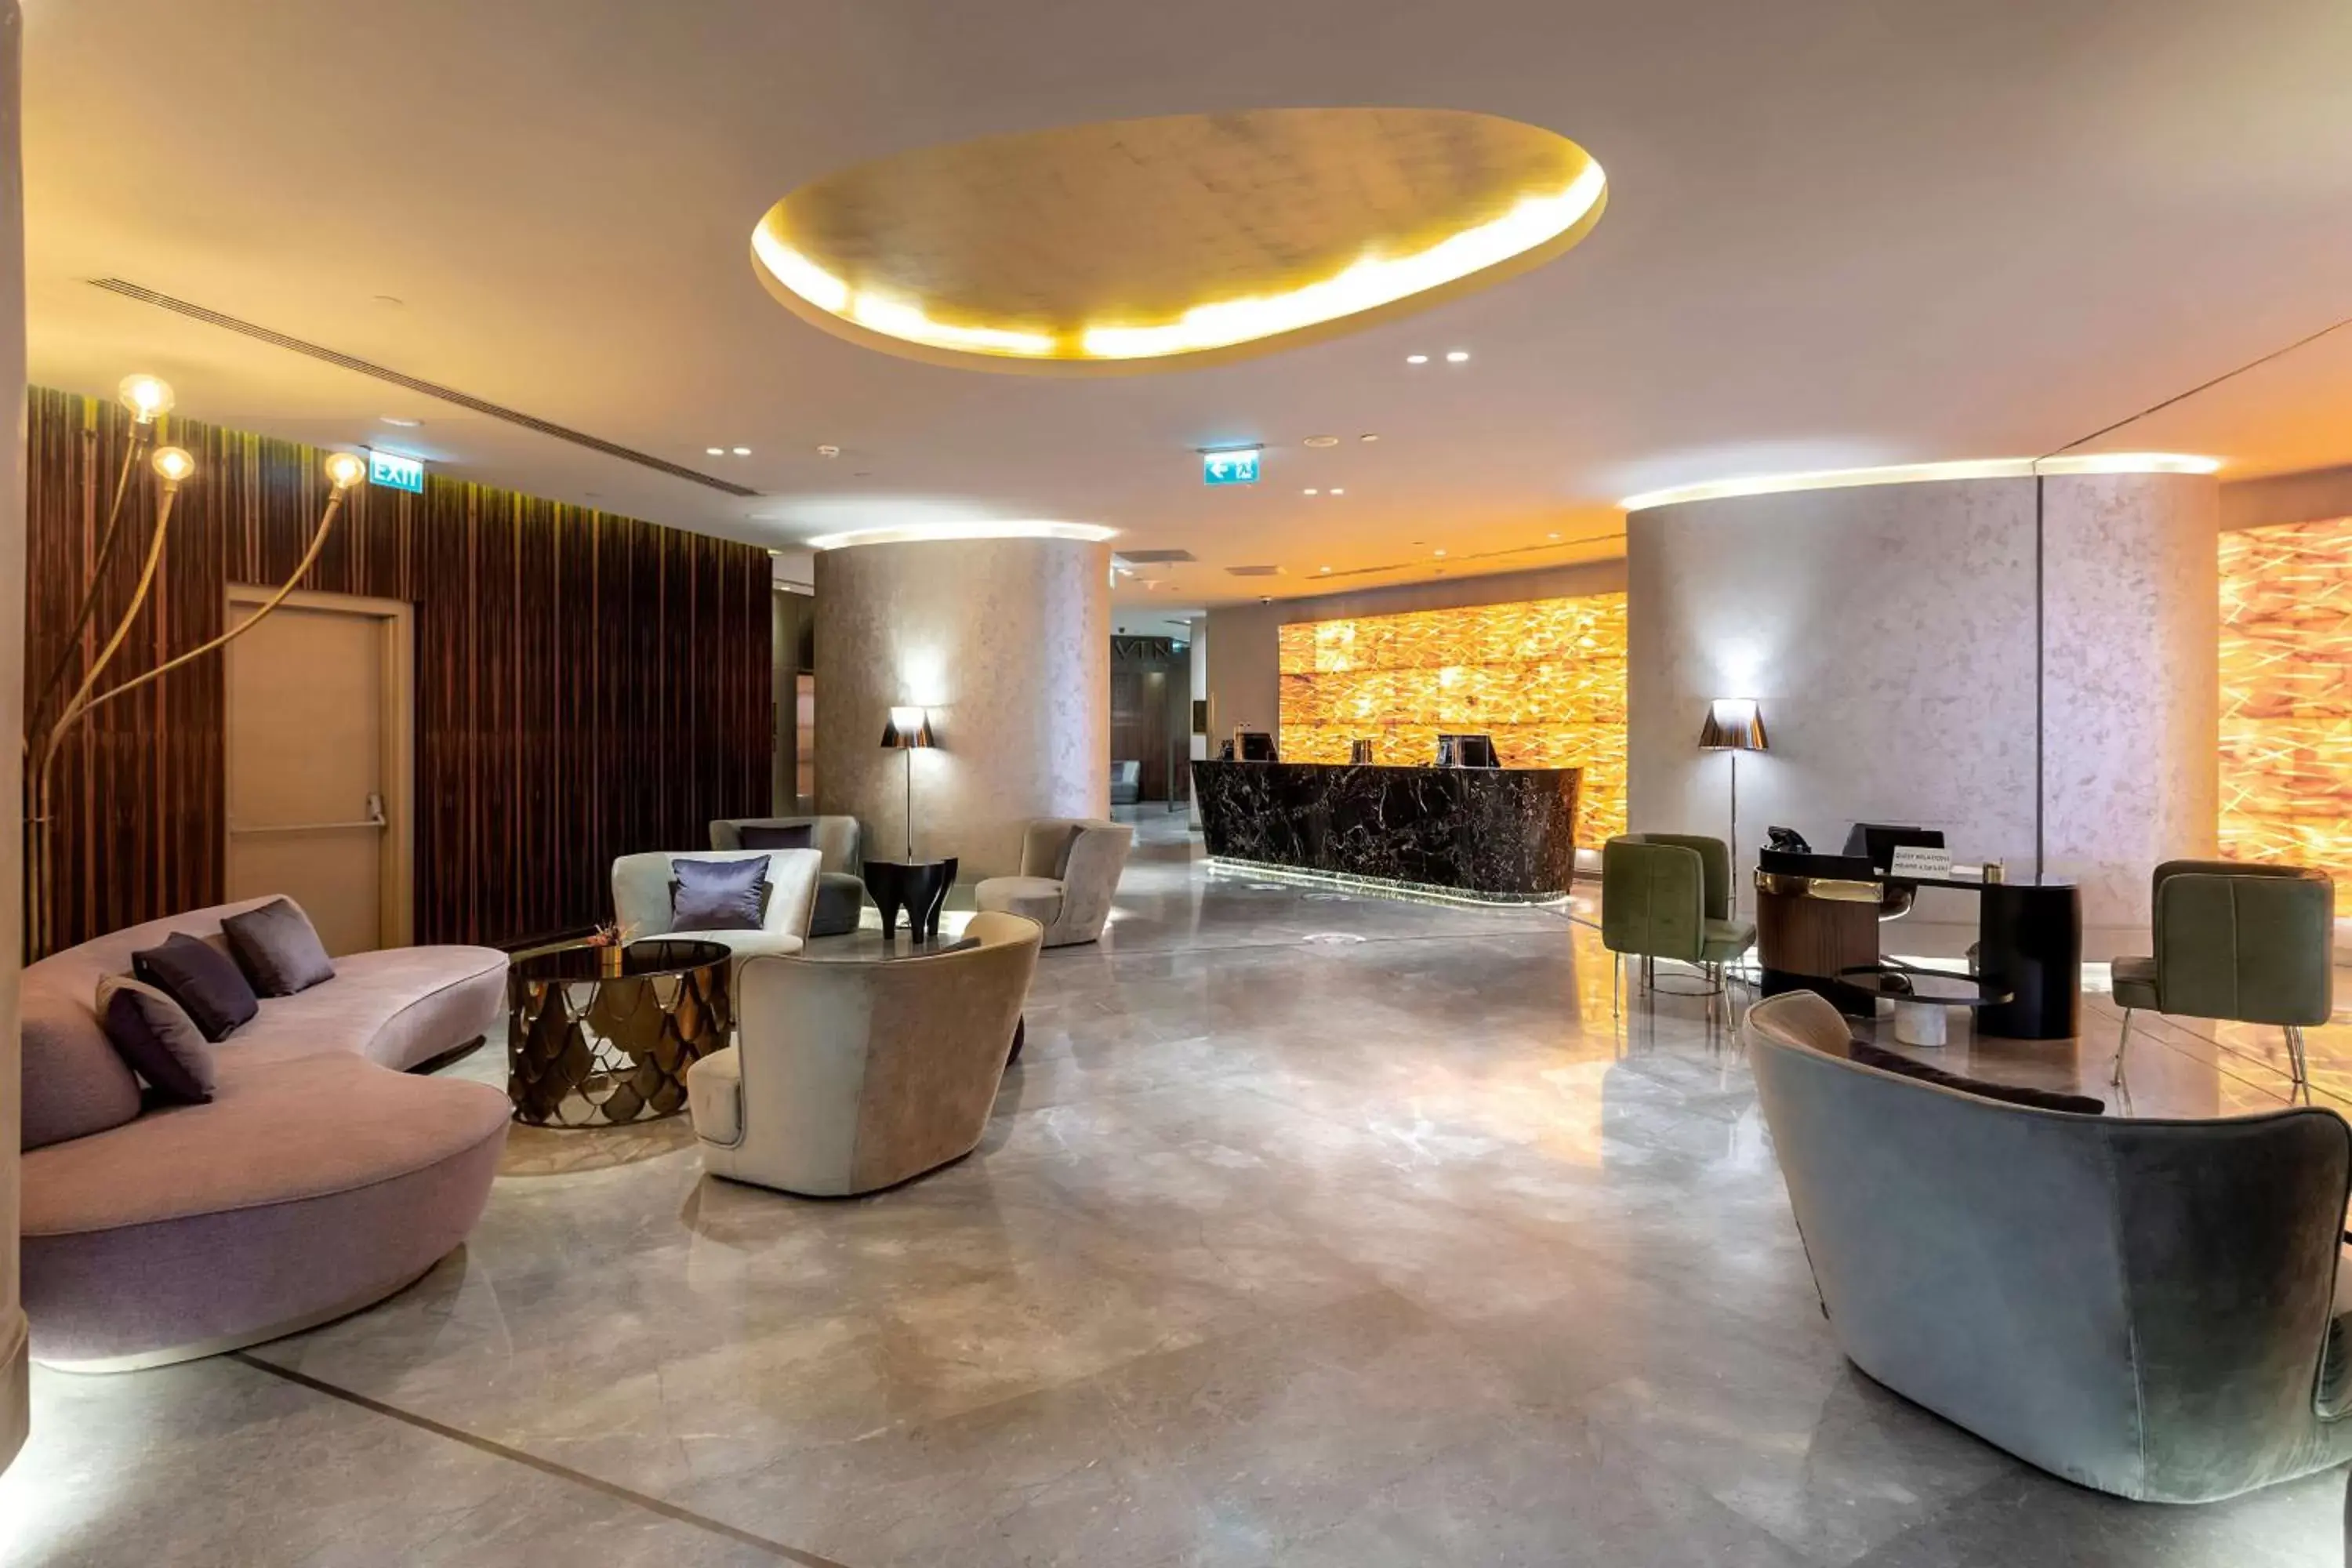 Lobby or reception, Lobby/Reception in Radisson Blu Hotel Istanbul Ottomare